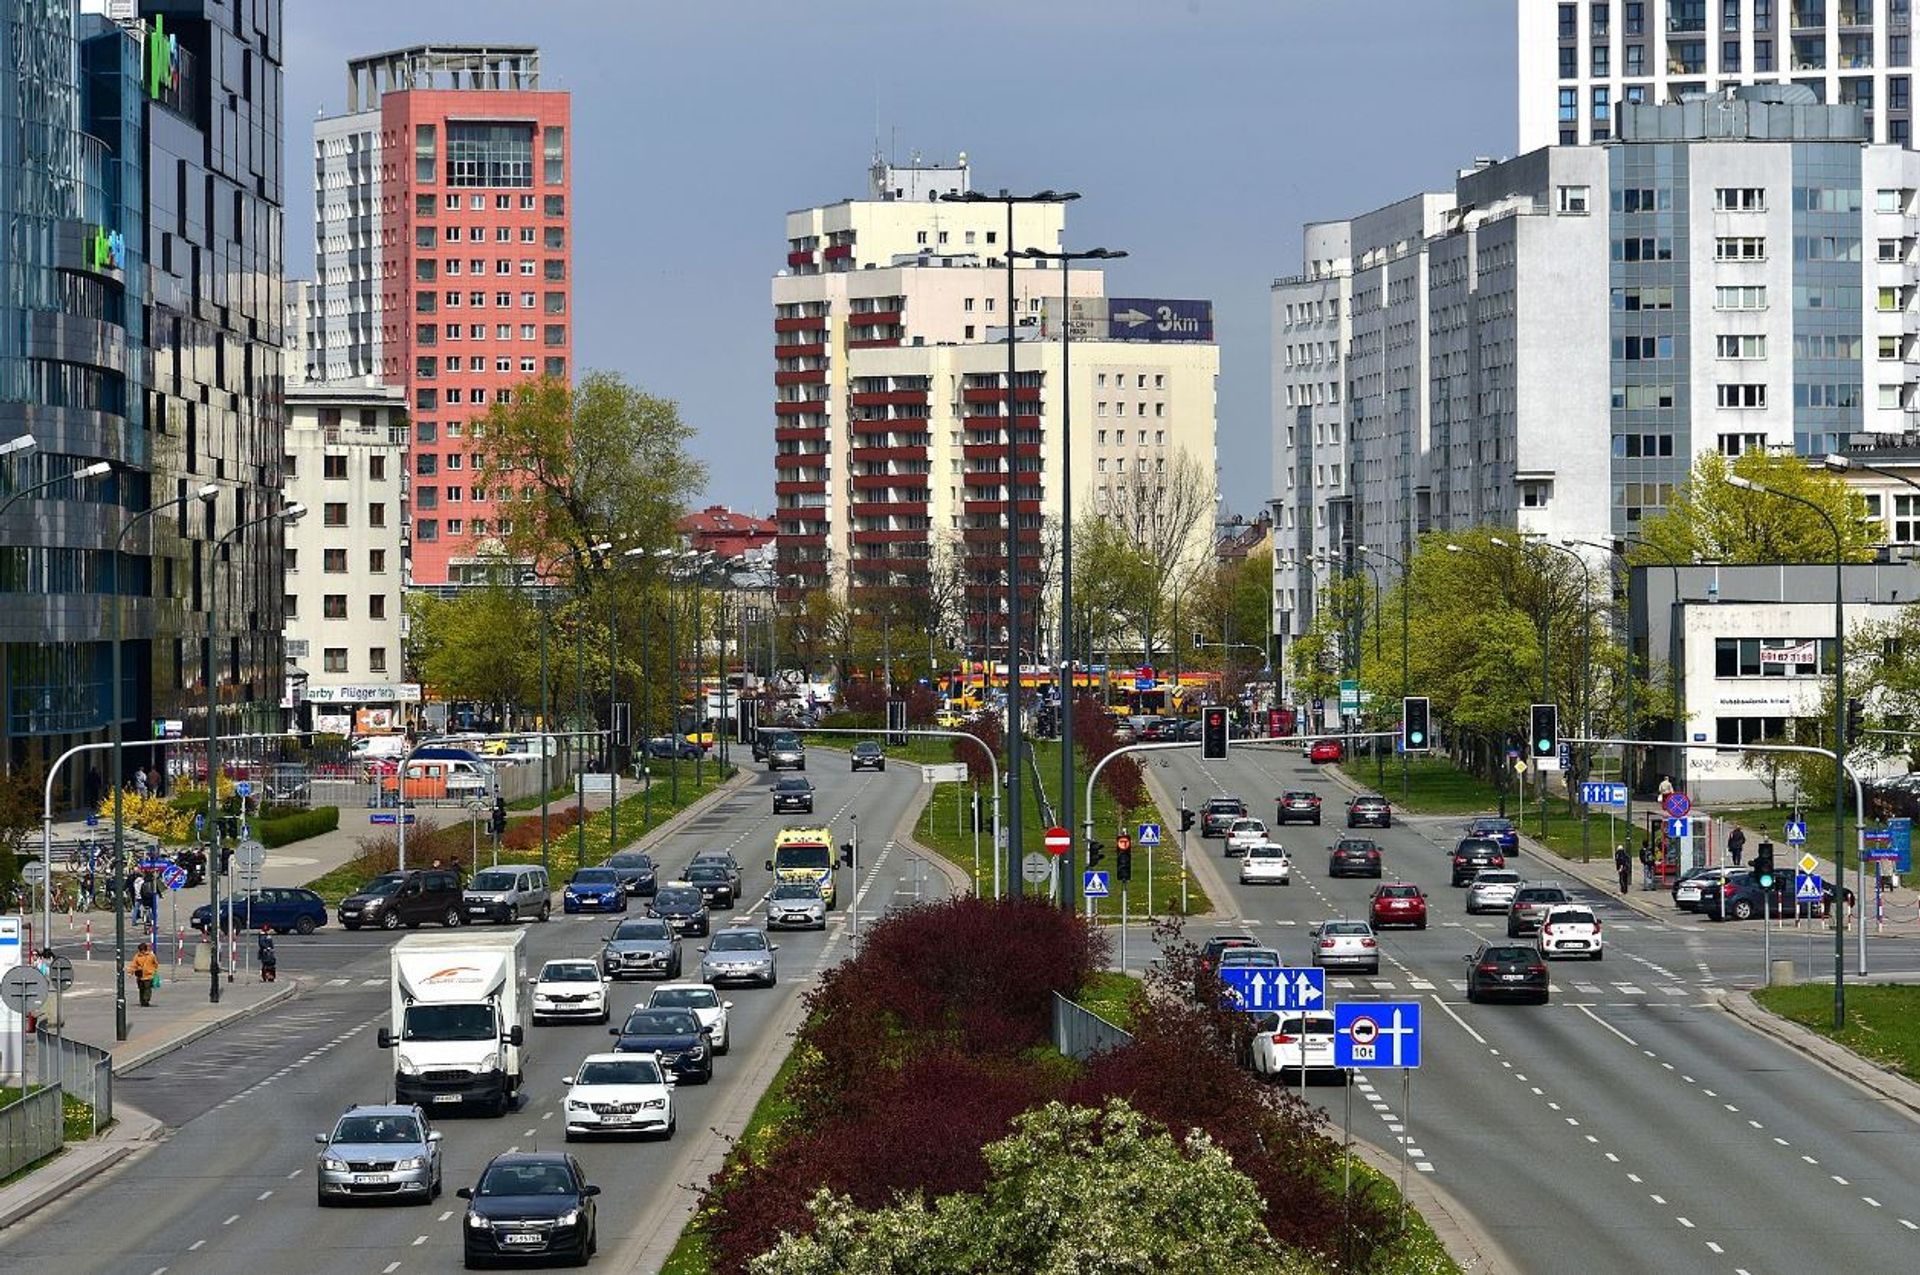 Prawobrzeżna Warszawa ma duży potencjał. Gdzie mogą powstawać nowe biurowce?